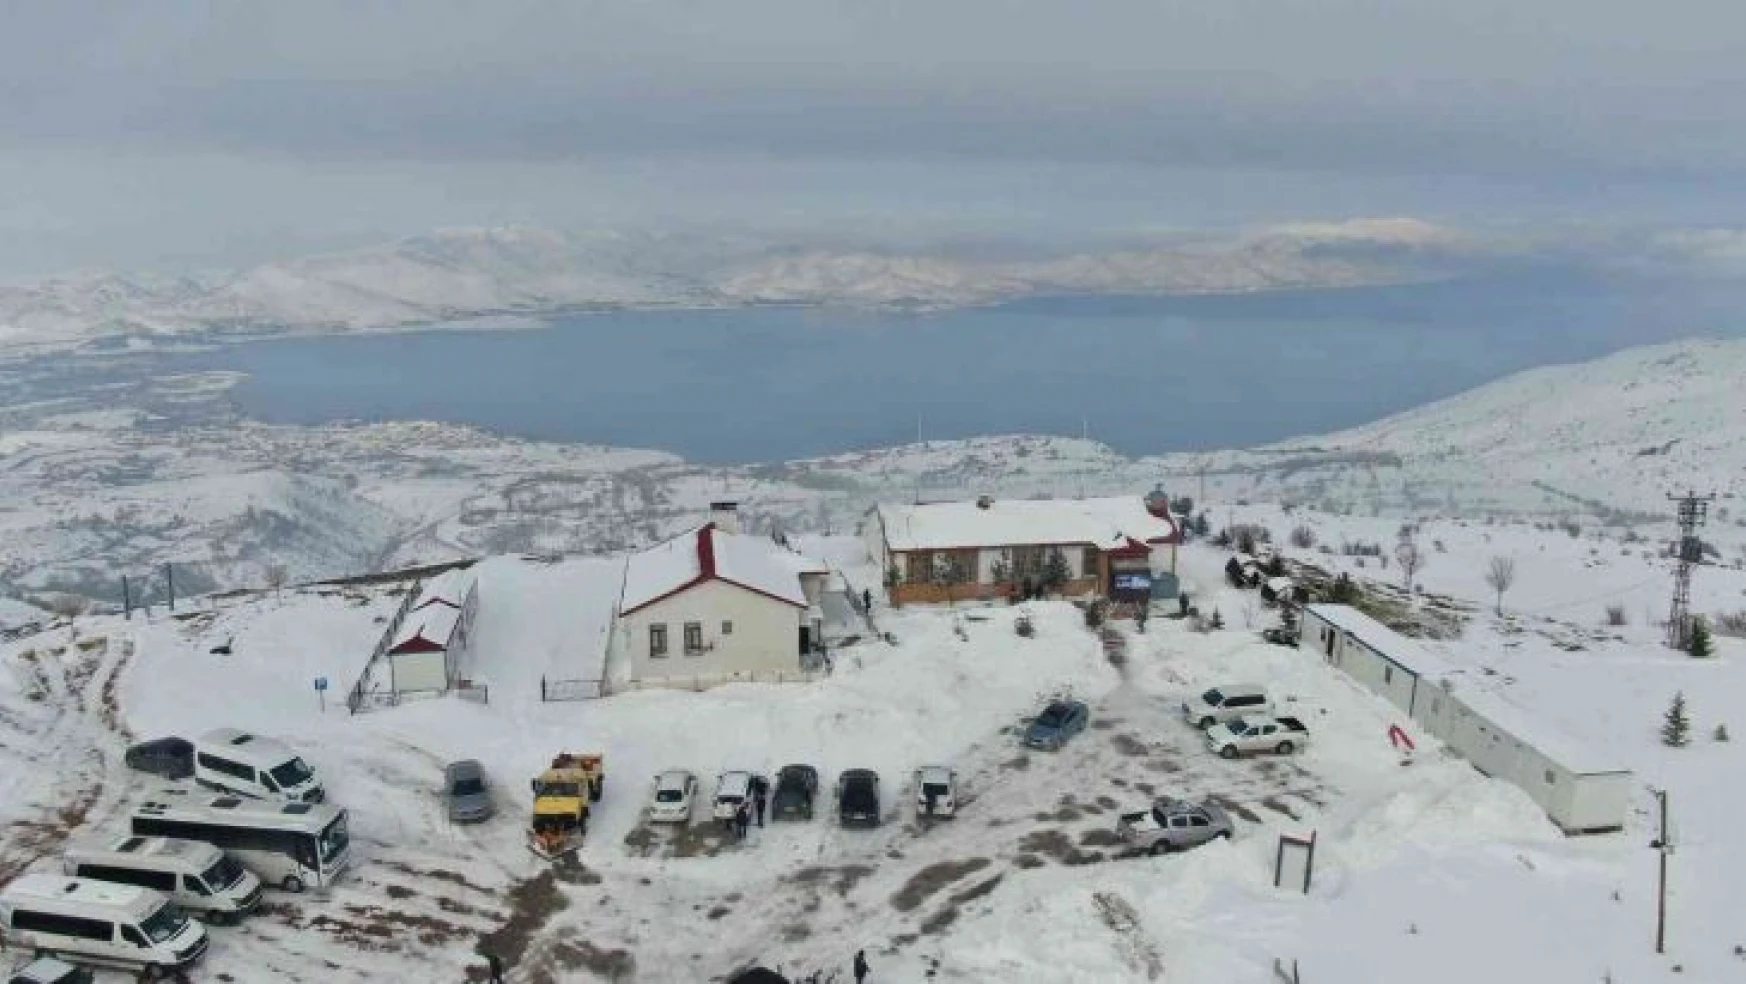 Elazığ Hazarbaba Kayak Merkezinde sezon uzatıldı